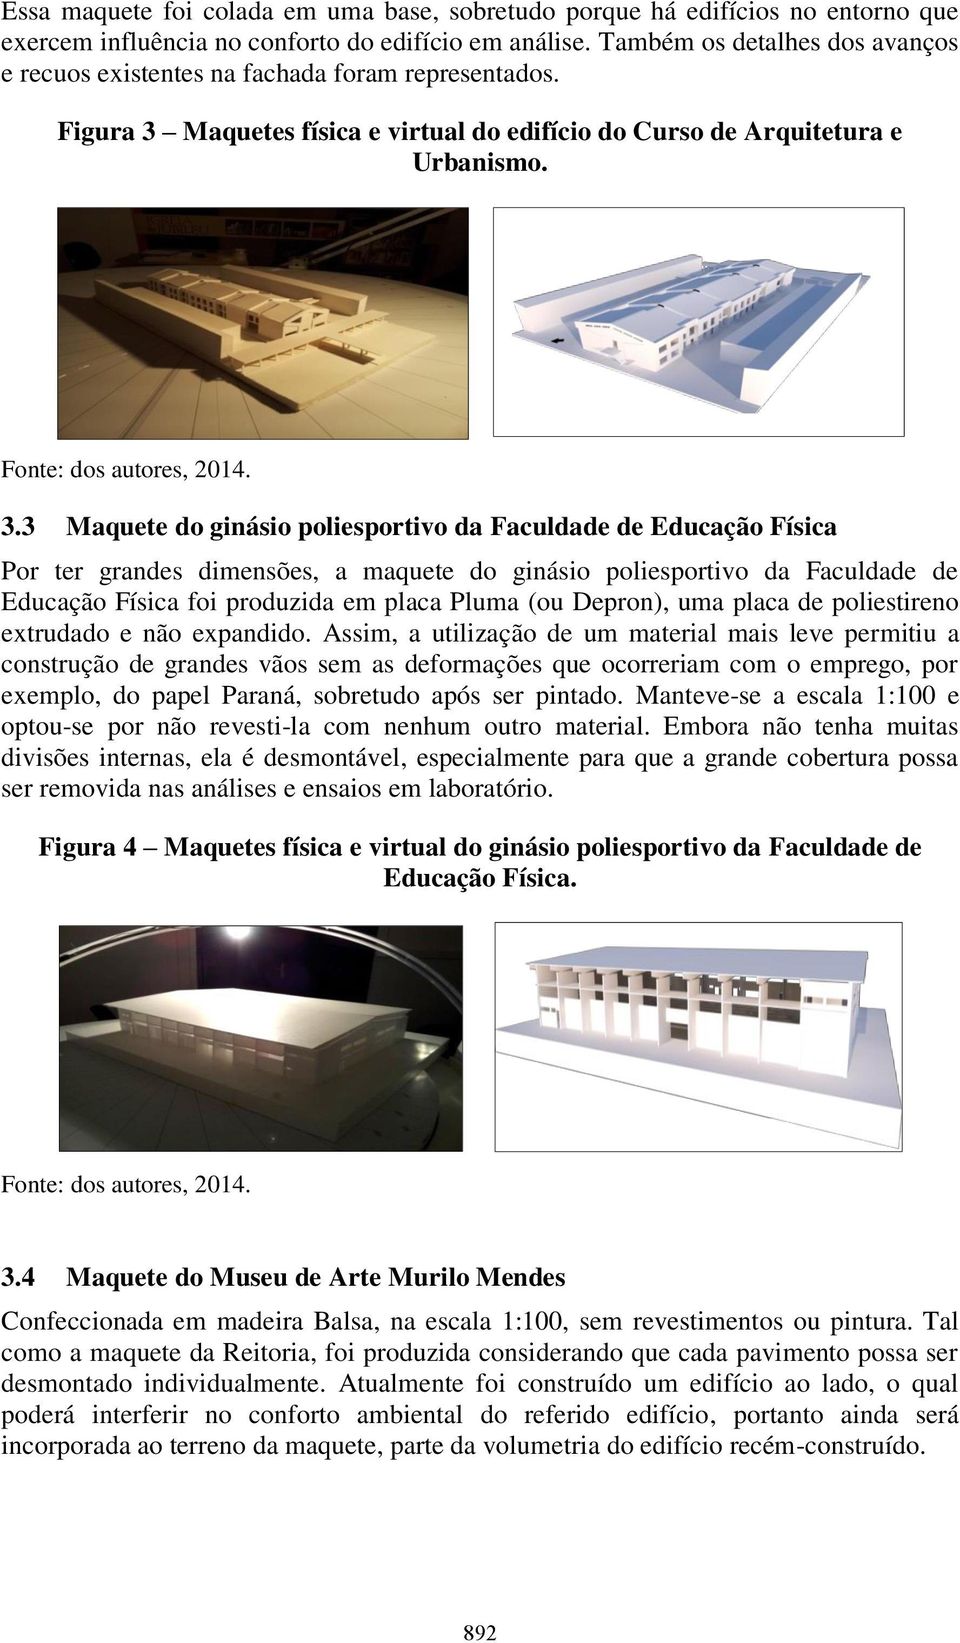 Maquetes física e virtual do edifício do Curso de Arquitetura e Urbanismo. 3.